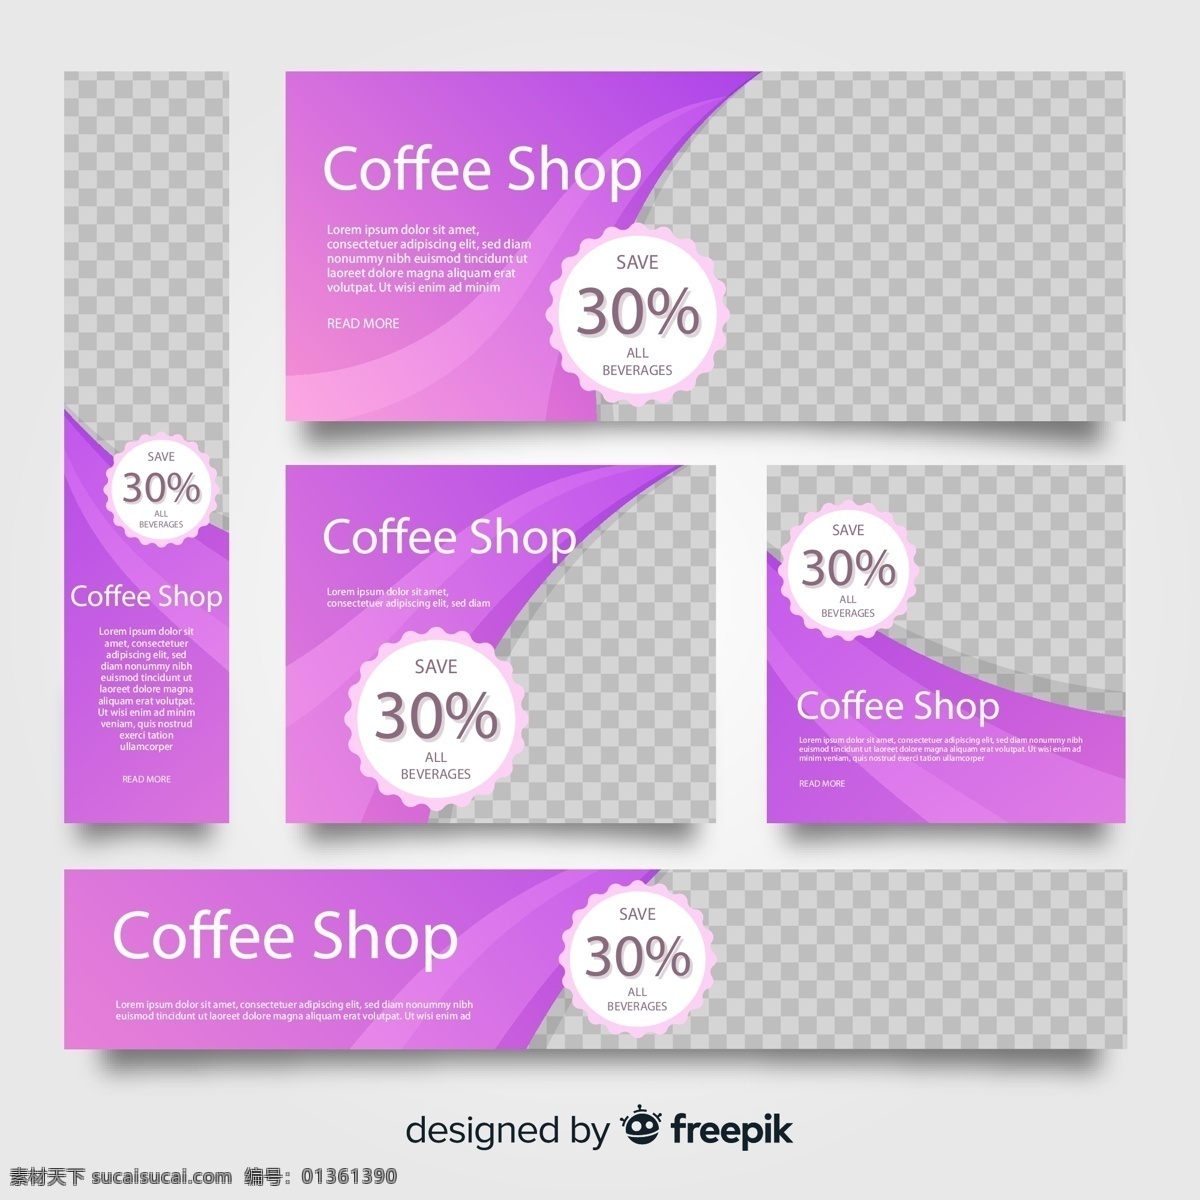 咖啡店图片 矢量素材 紫色 咖啡馆 咖啡店 促销 矢量 高清图片